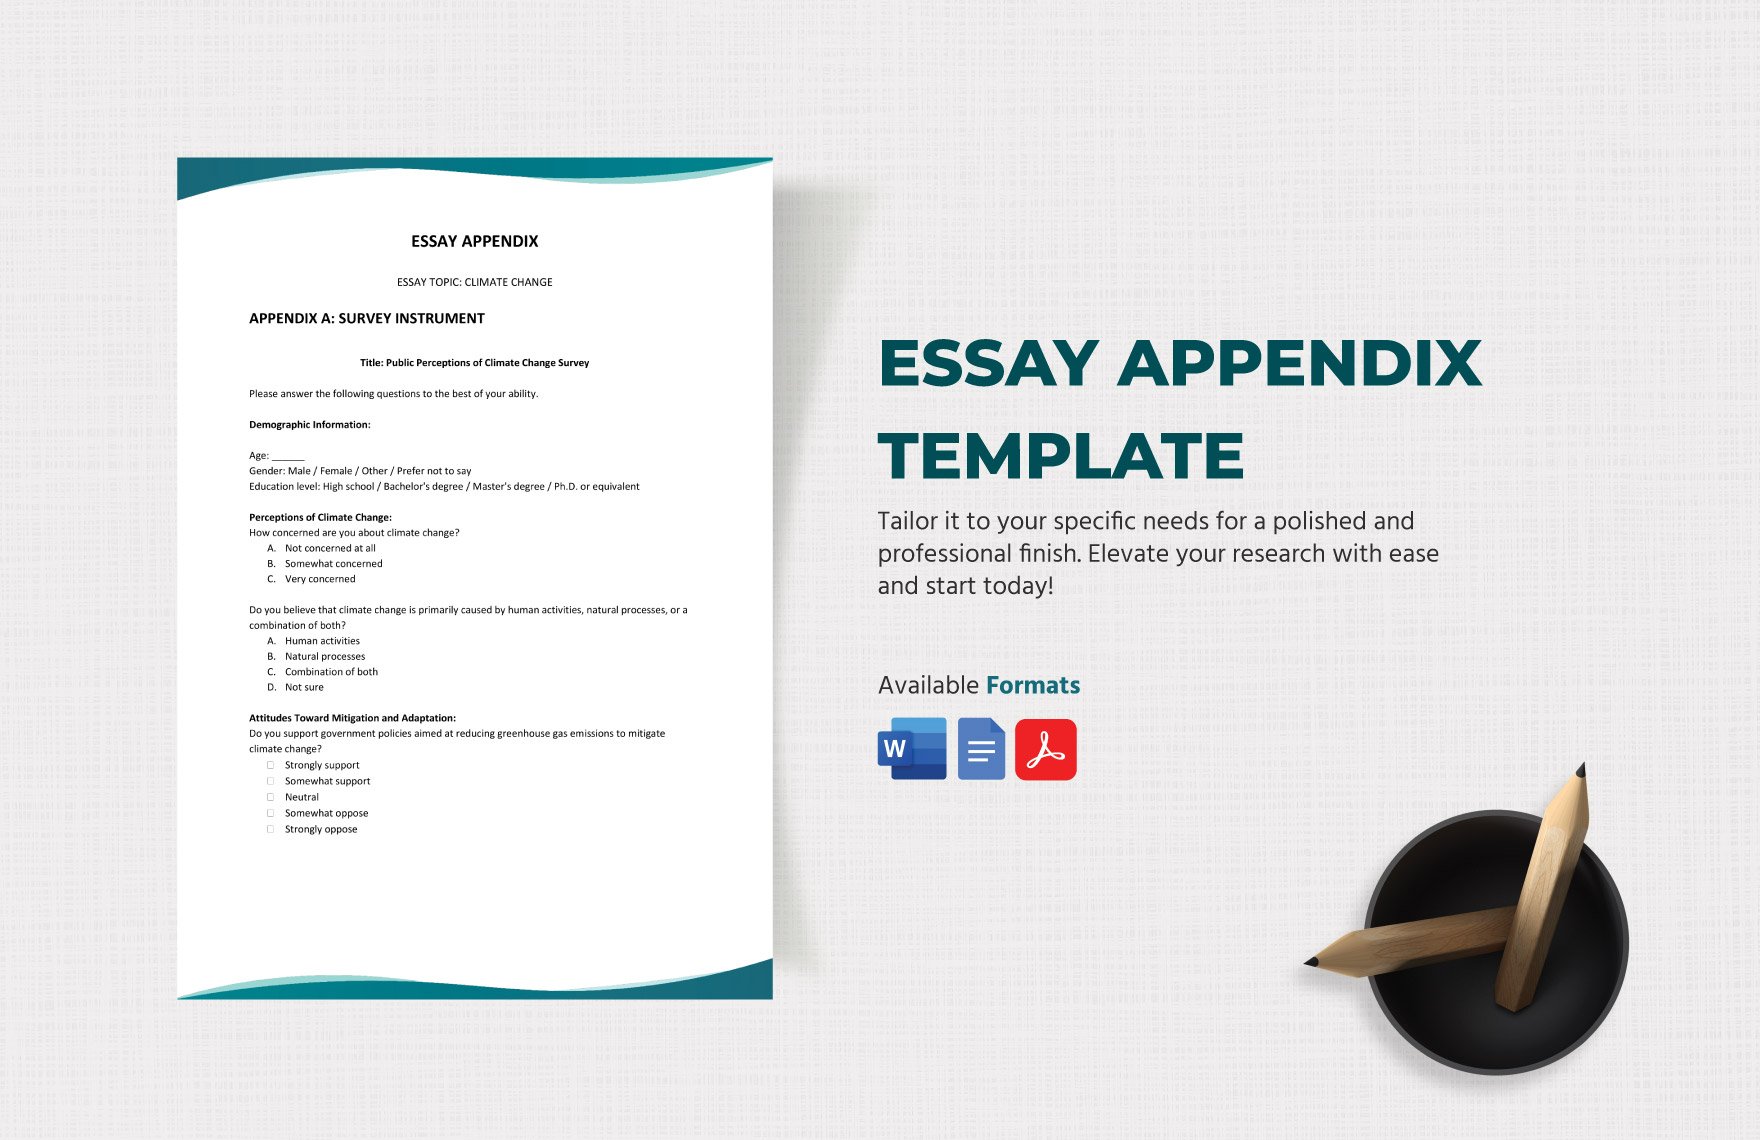 Essay Appendix Template